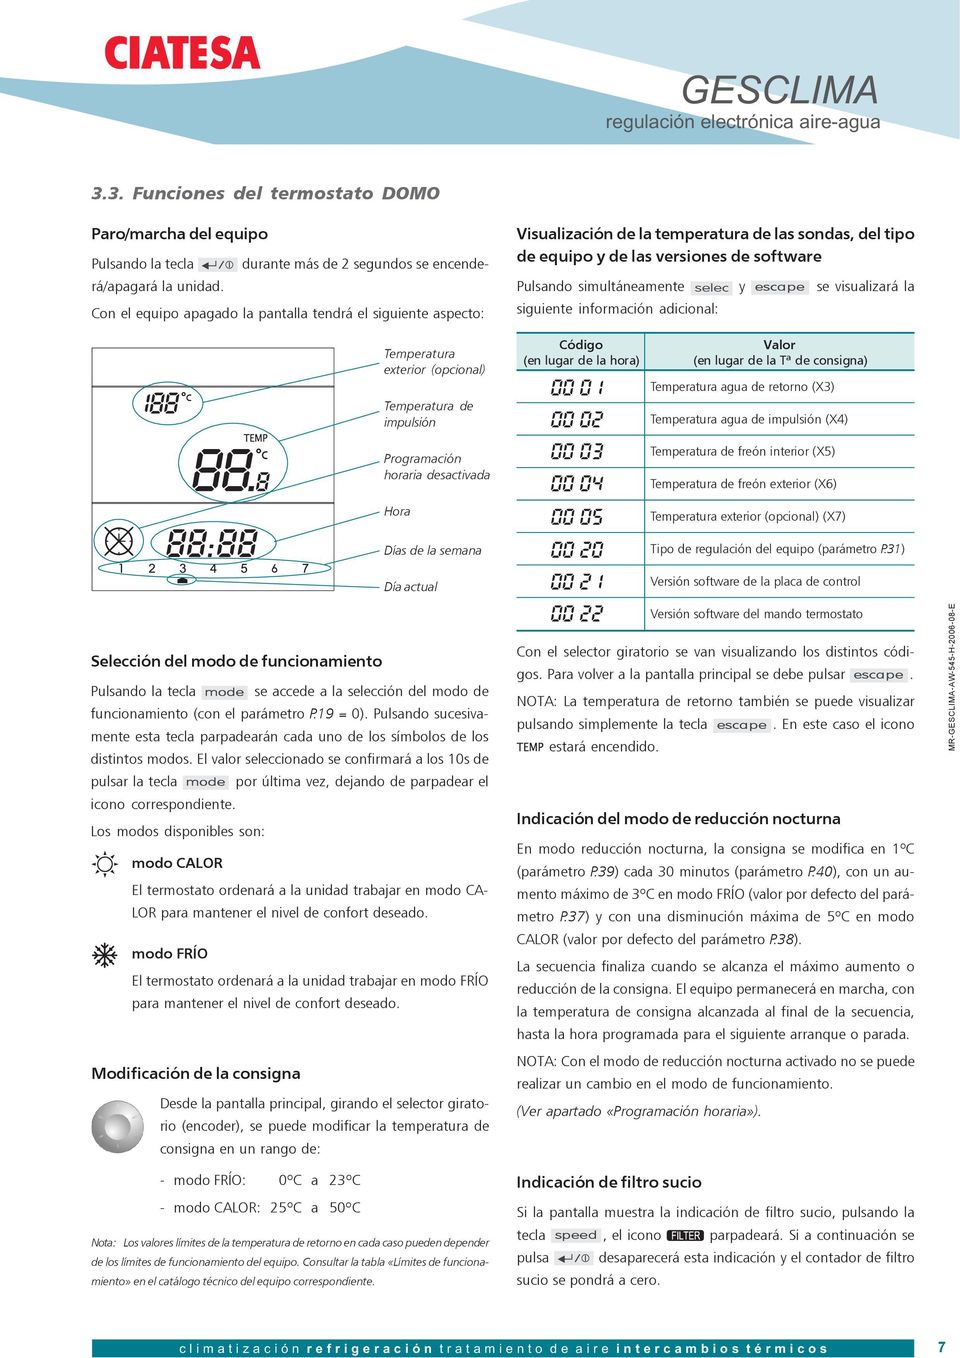 MANUAL DE REGULACIÓN. regulación electrónica equipos aire-agua Nº 2006 / 08 - PDF Free